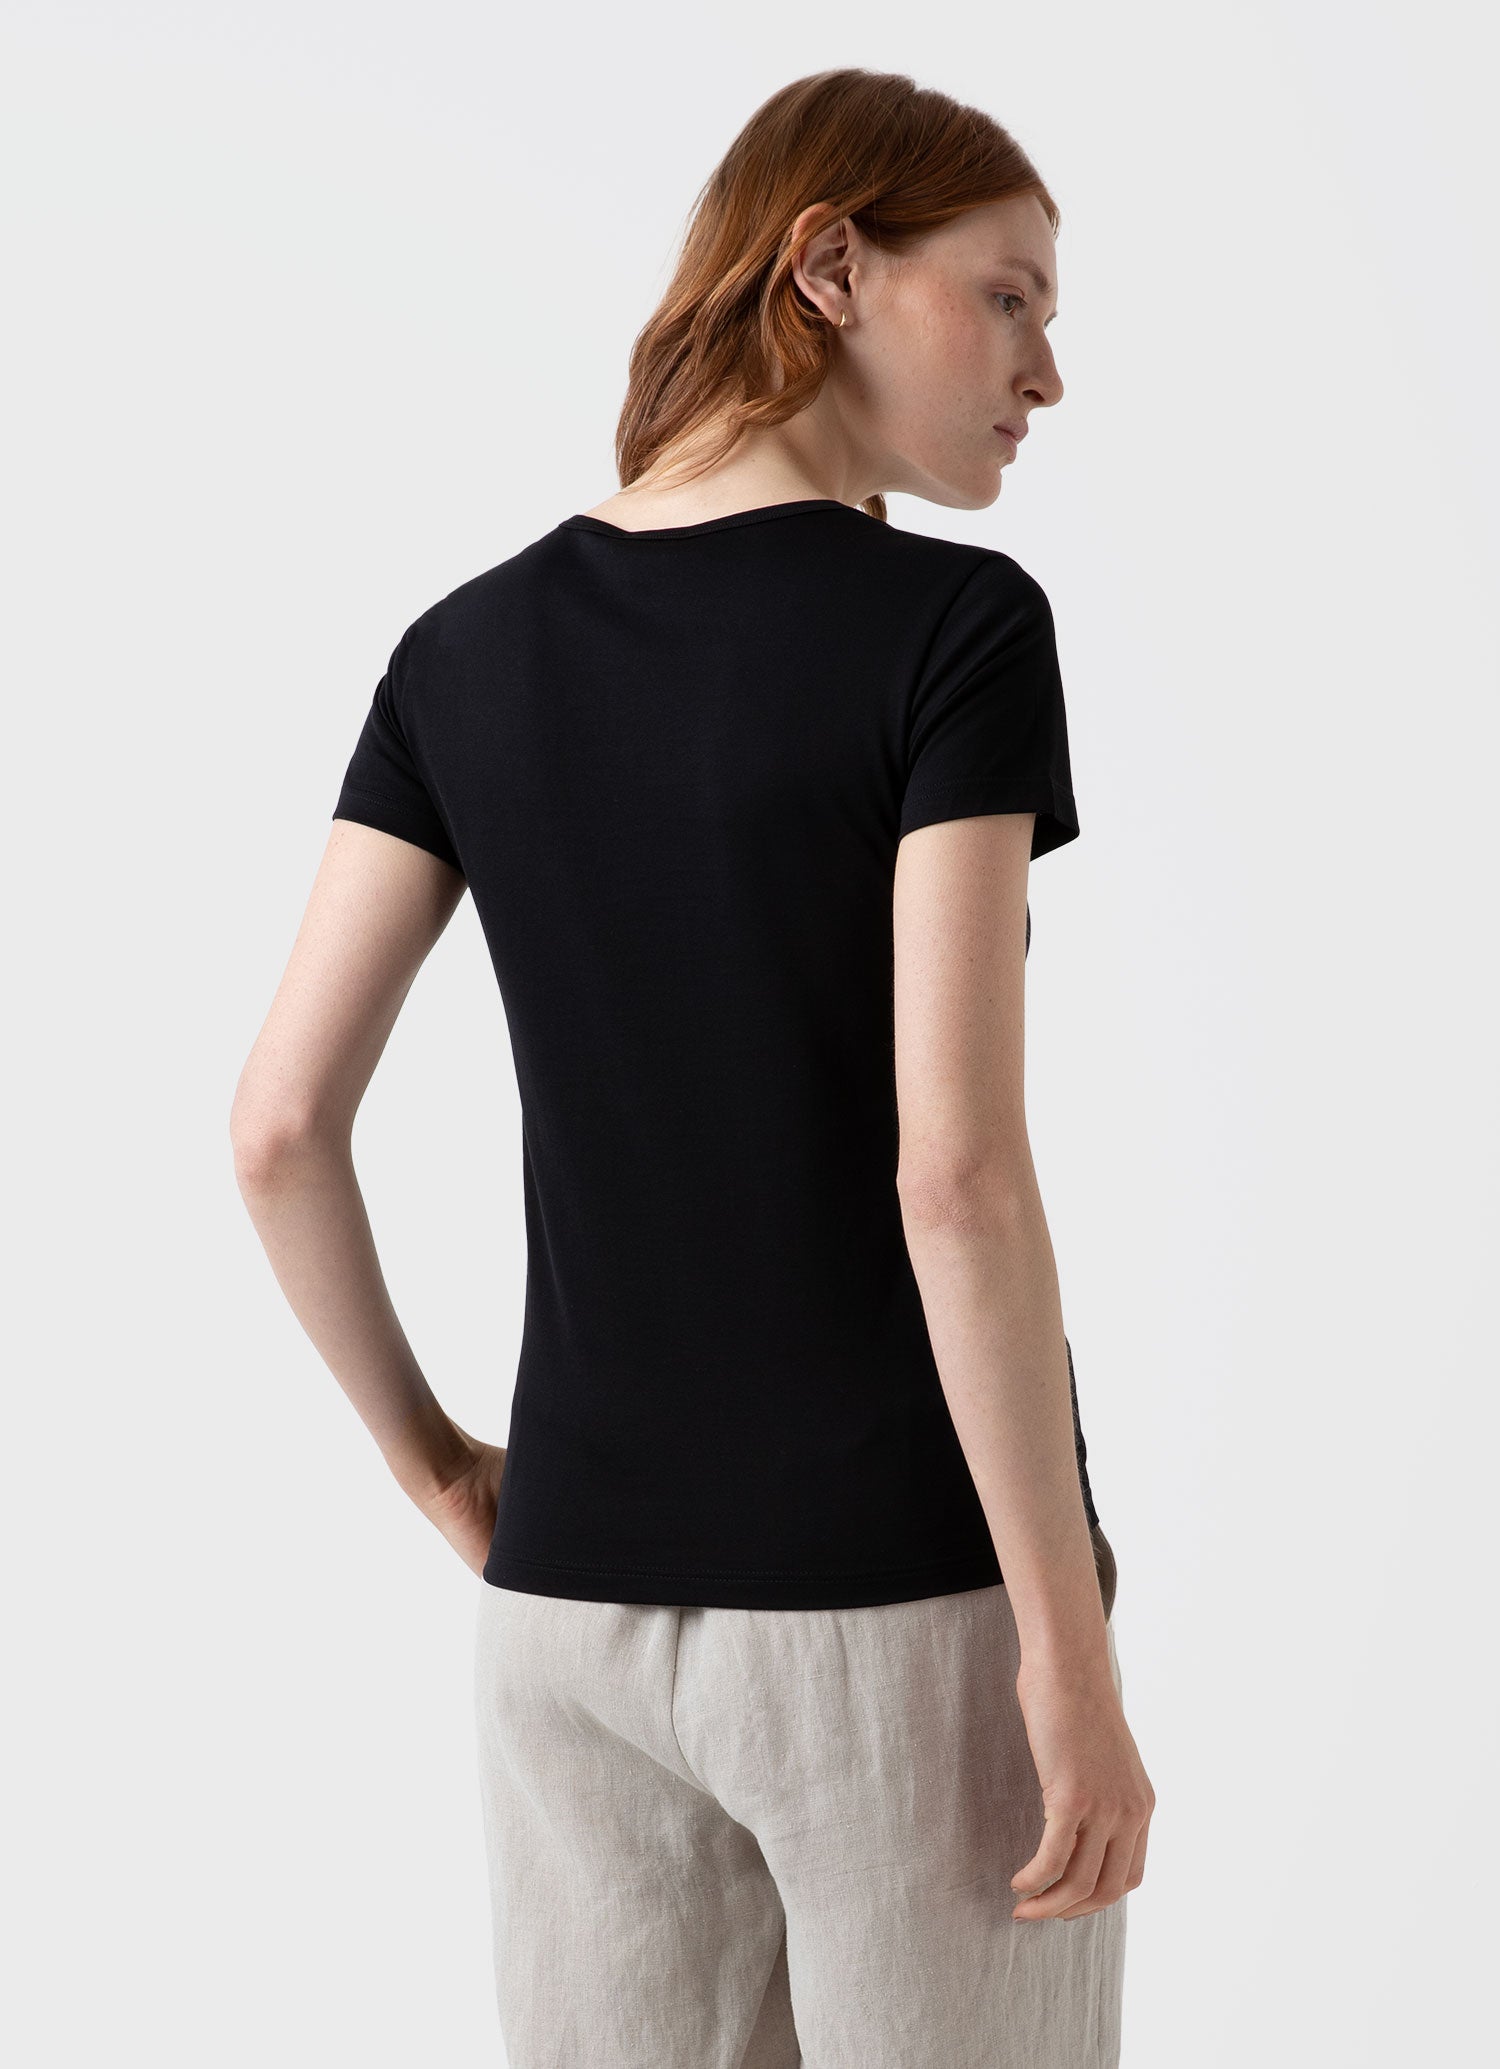 Women's Classic Scoop Neck T-shirt in Black